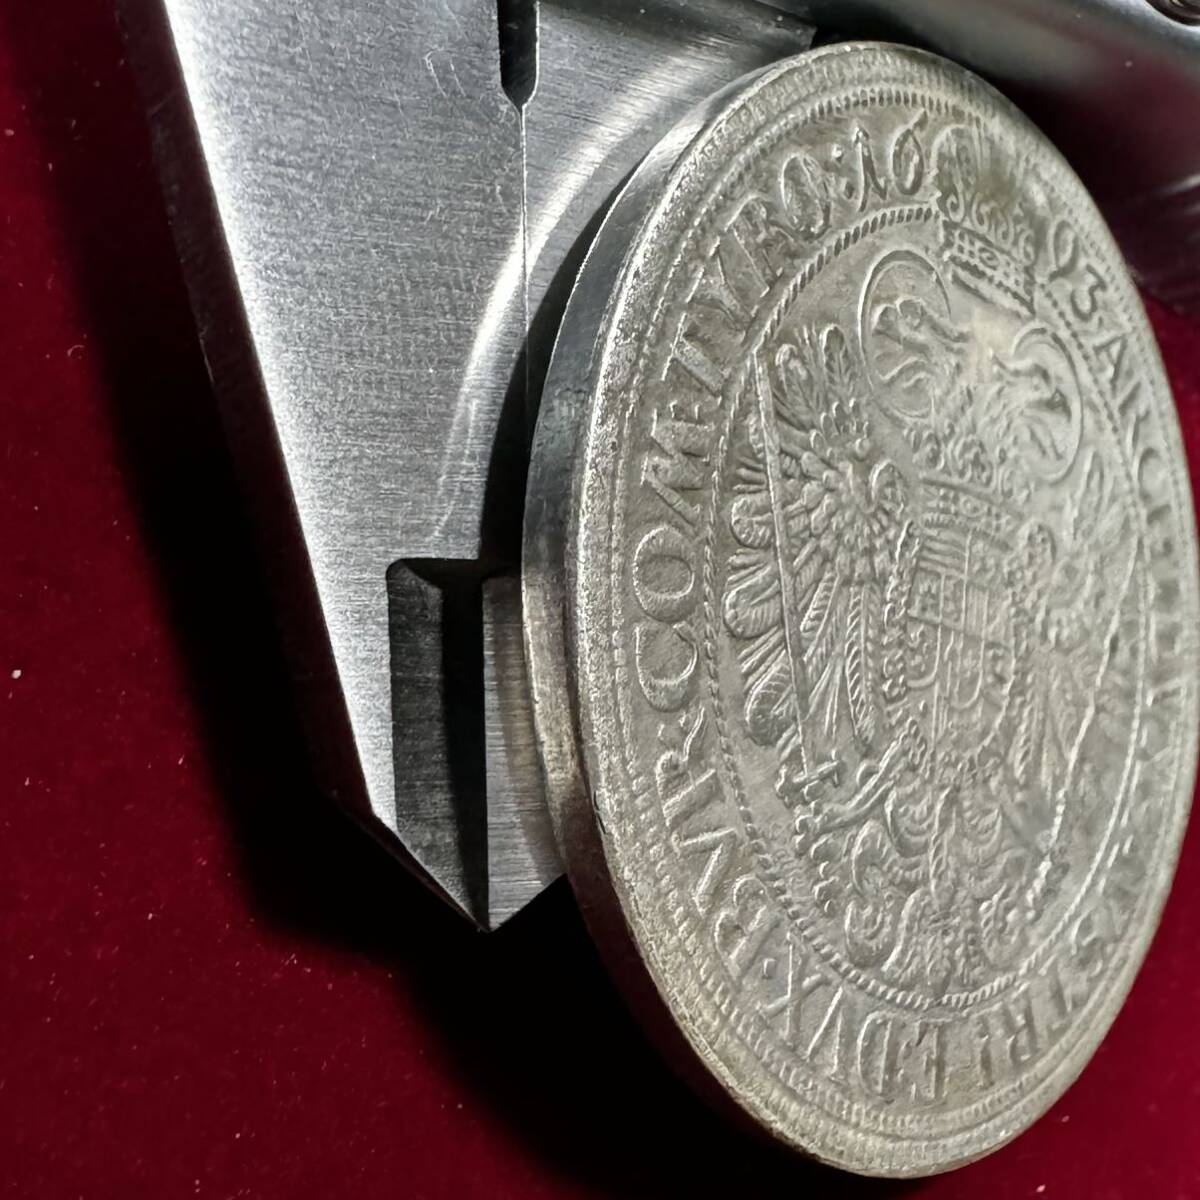 神聖ローマ帝国 硬貨 古銭 レオポルド 1 世 1693年 オーストリア大公 双頭の帝国ワシ 剣 笏 クラウン コイン 銀貨 外国古銭 海外硬貨 の画像3